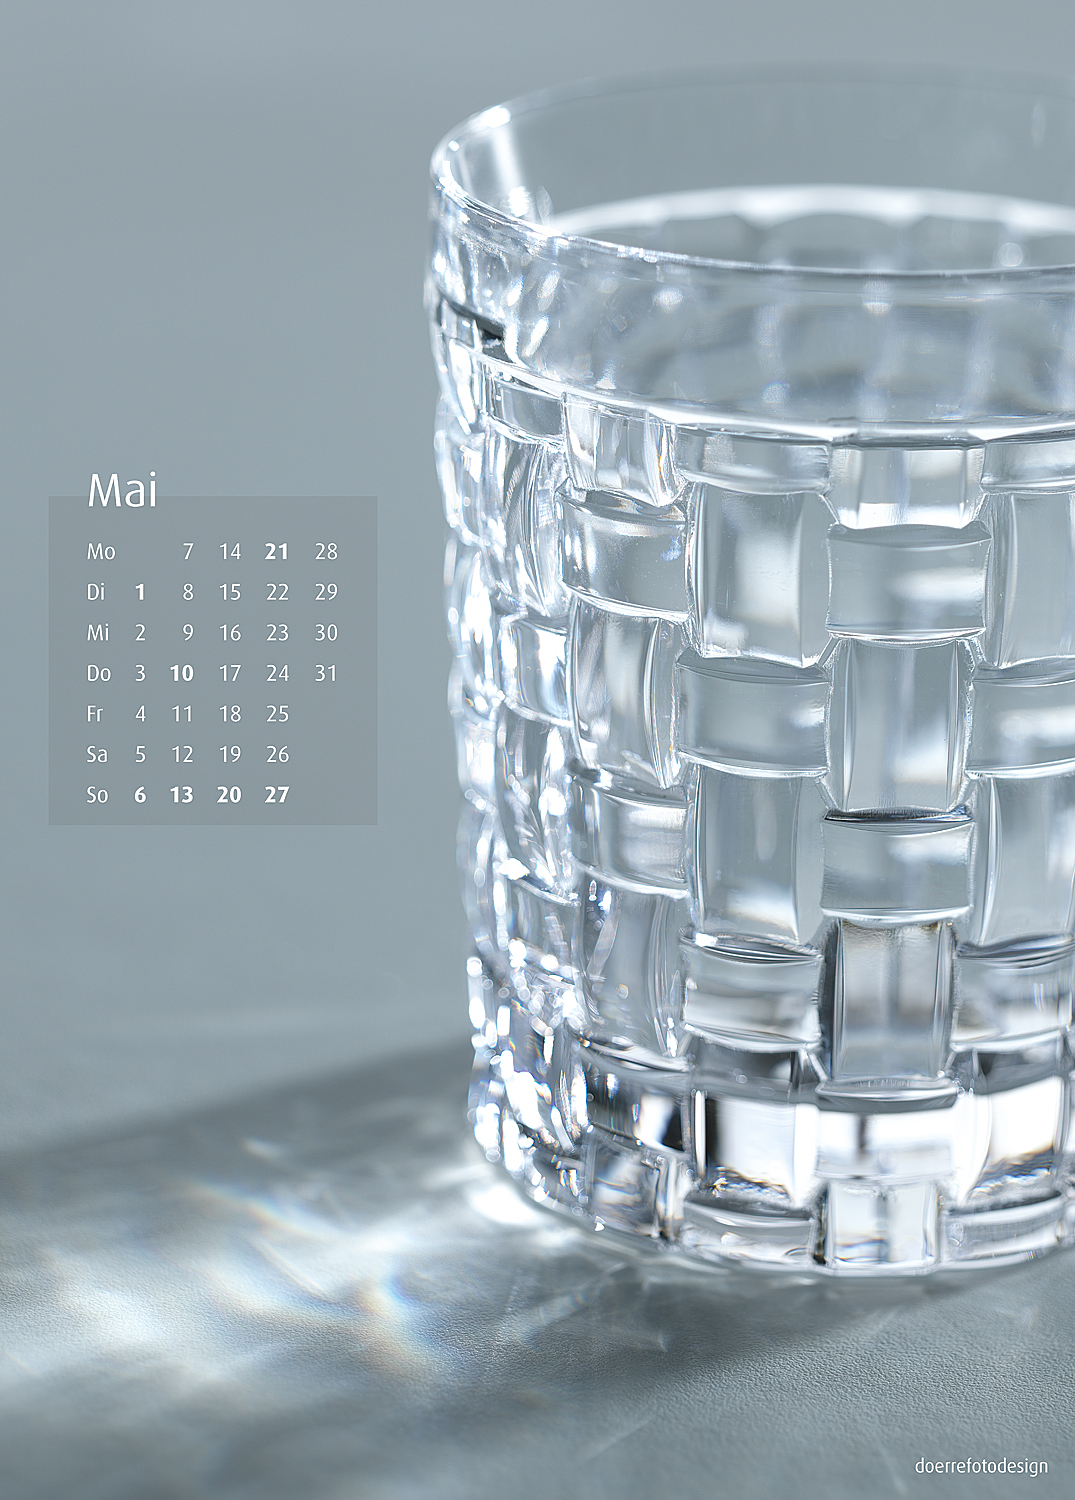 Wasserkalender 05